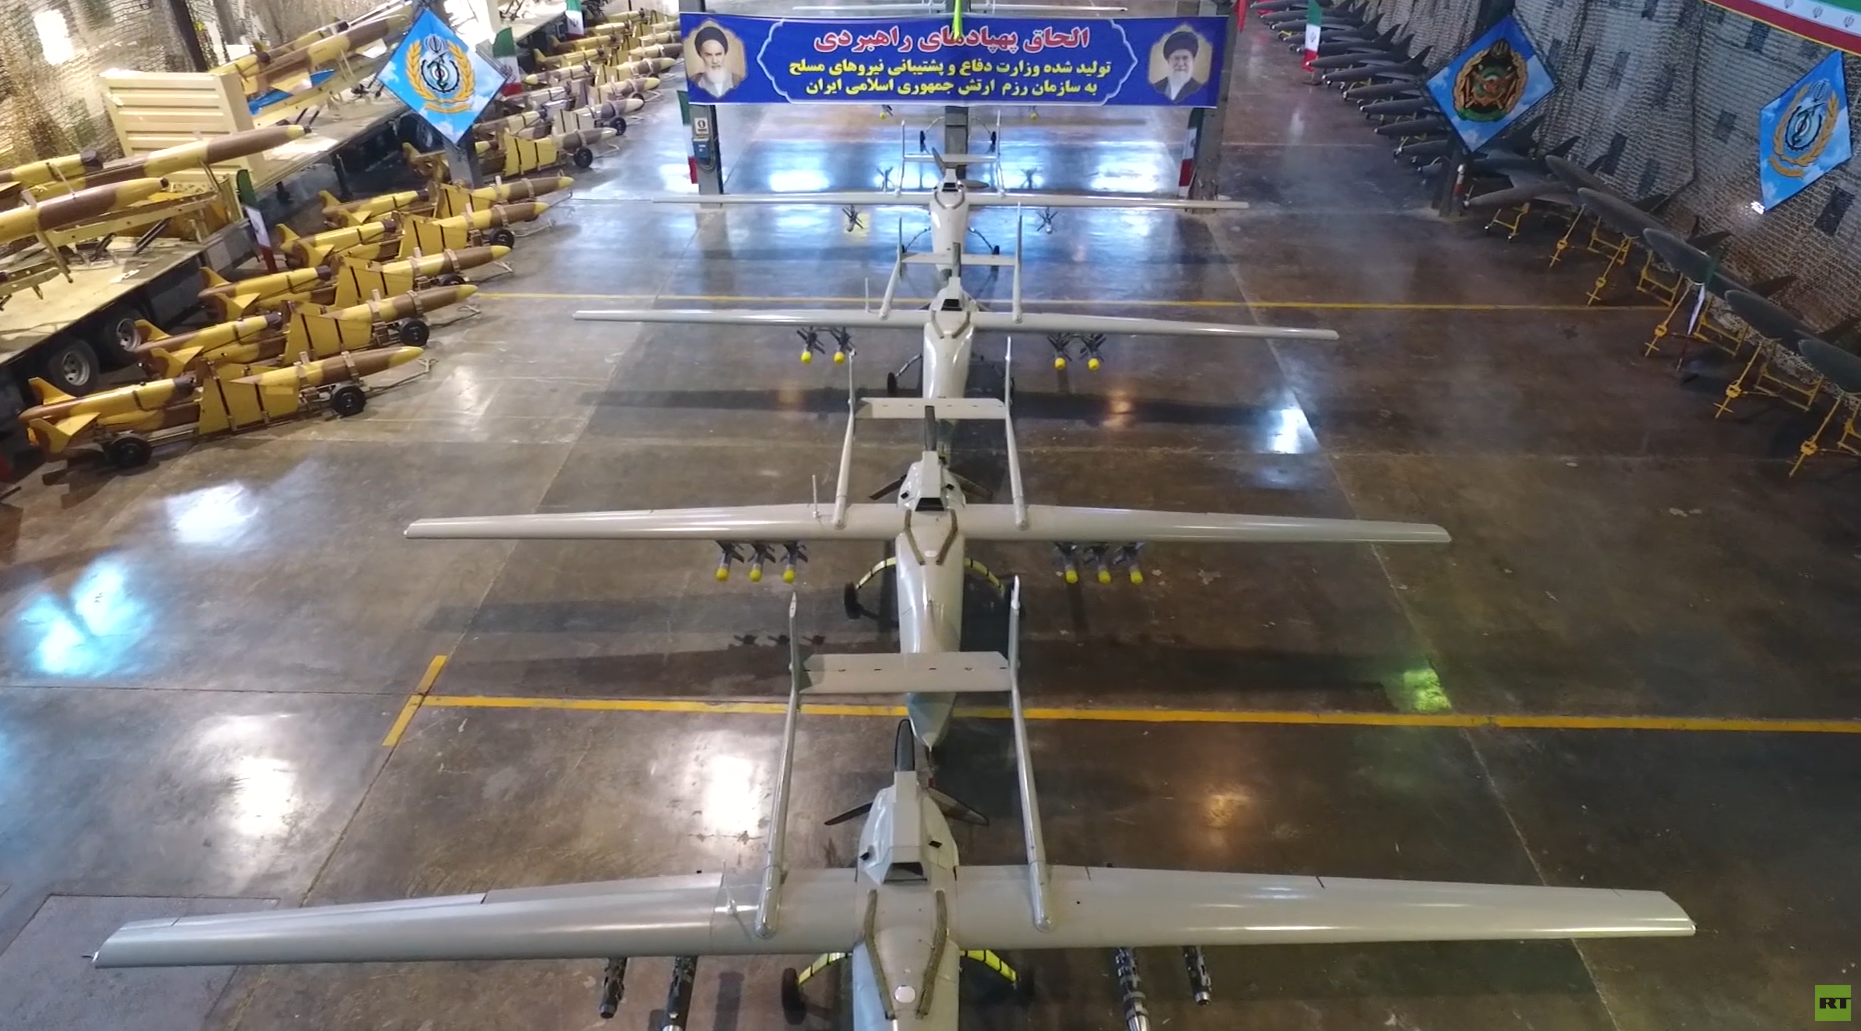 الجيش الإيراني يتسلم مجموعة كبيرة من الطائرات المسيّرة الاستراتيجية  ووزير الدفاع يعلق (فيديو)